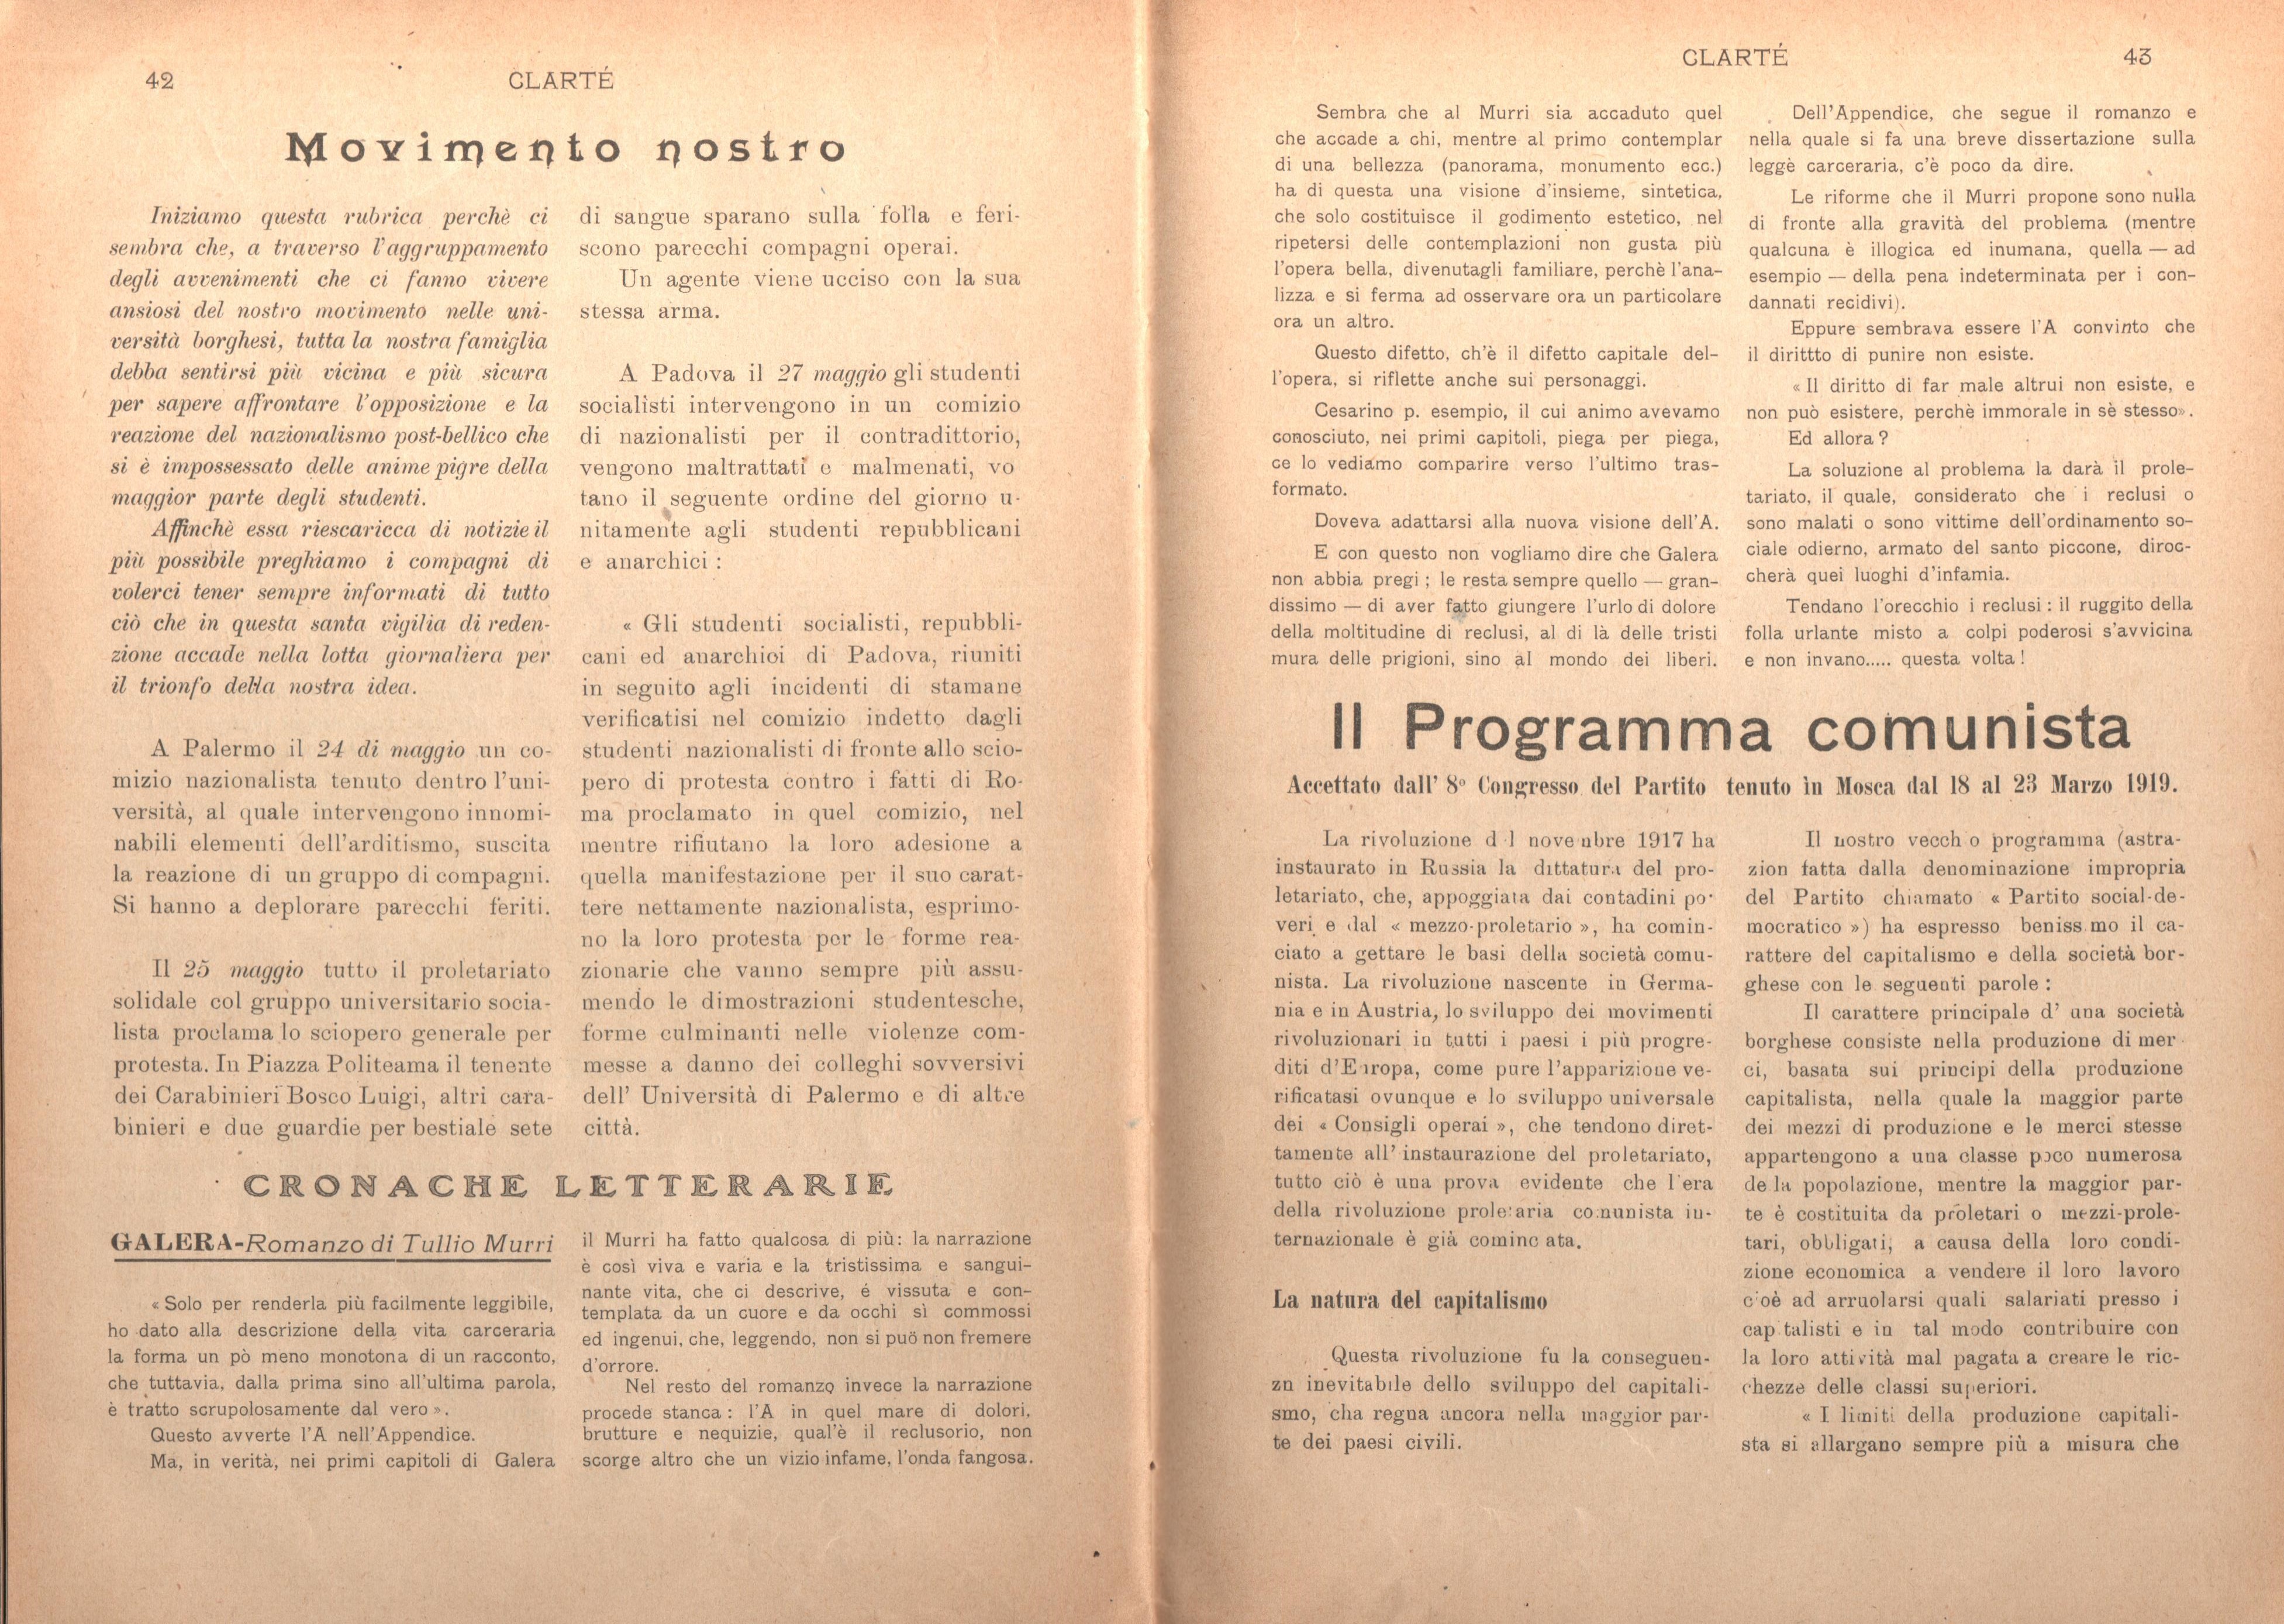 Clarté. Rivista mensile degli studenti comunisti (a. I, n. 2, Palermo, 15 giugno 1920) - pag. 11